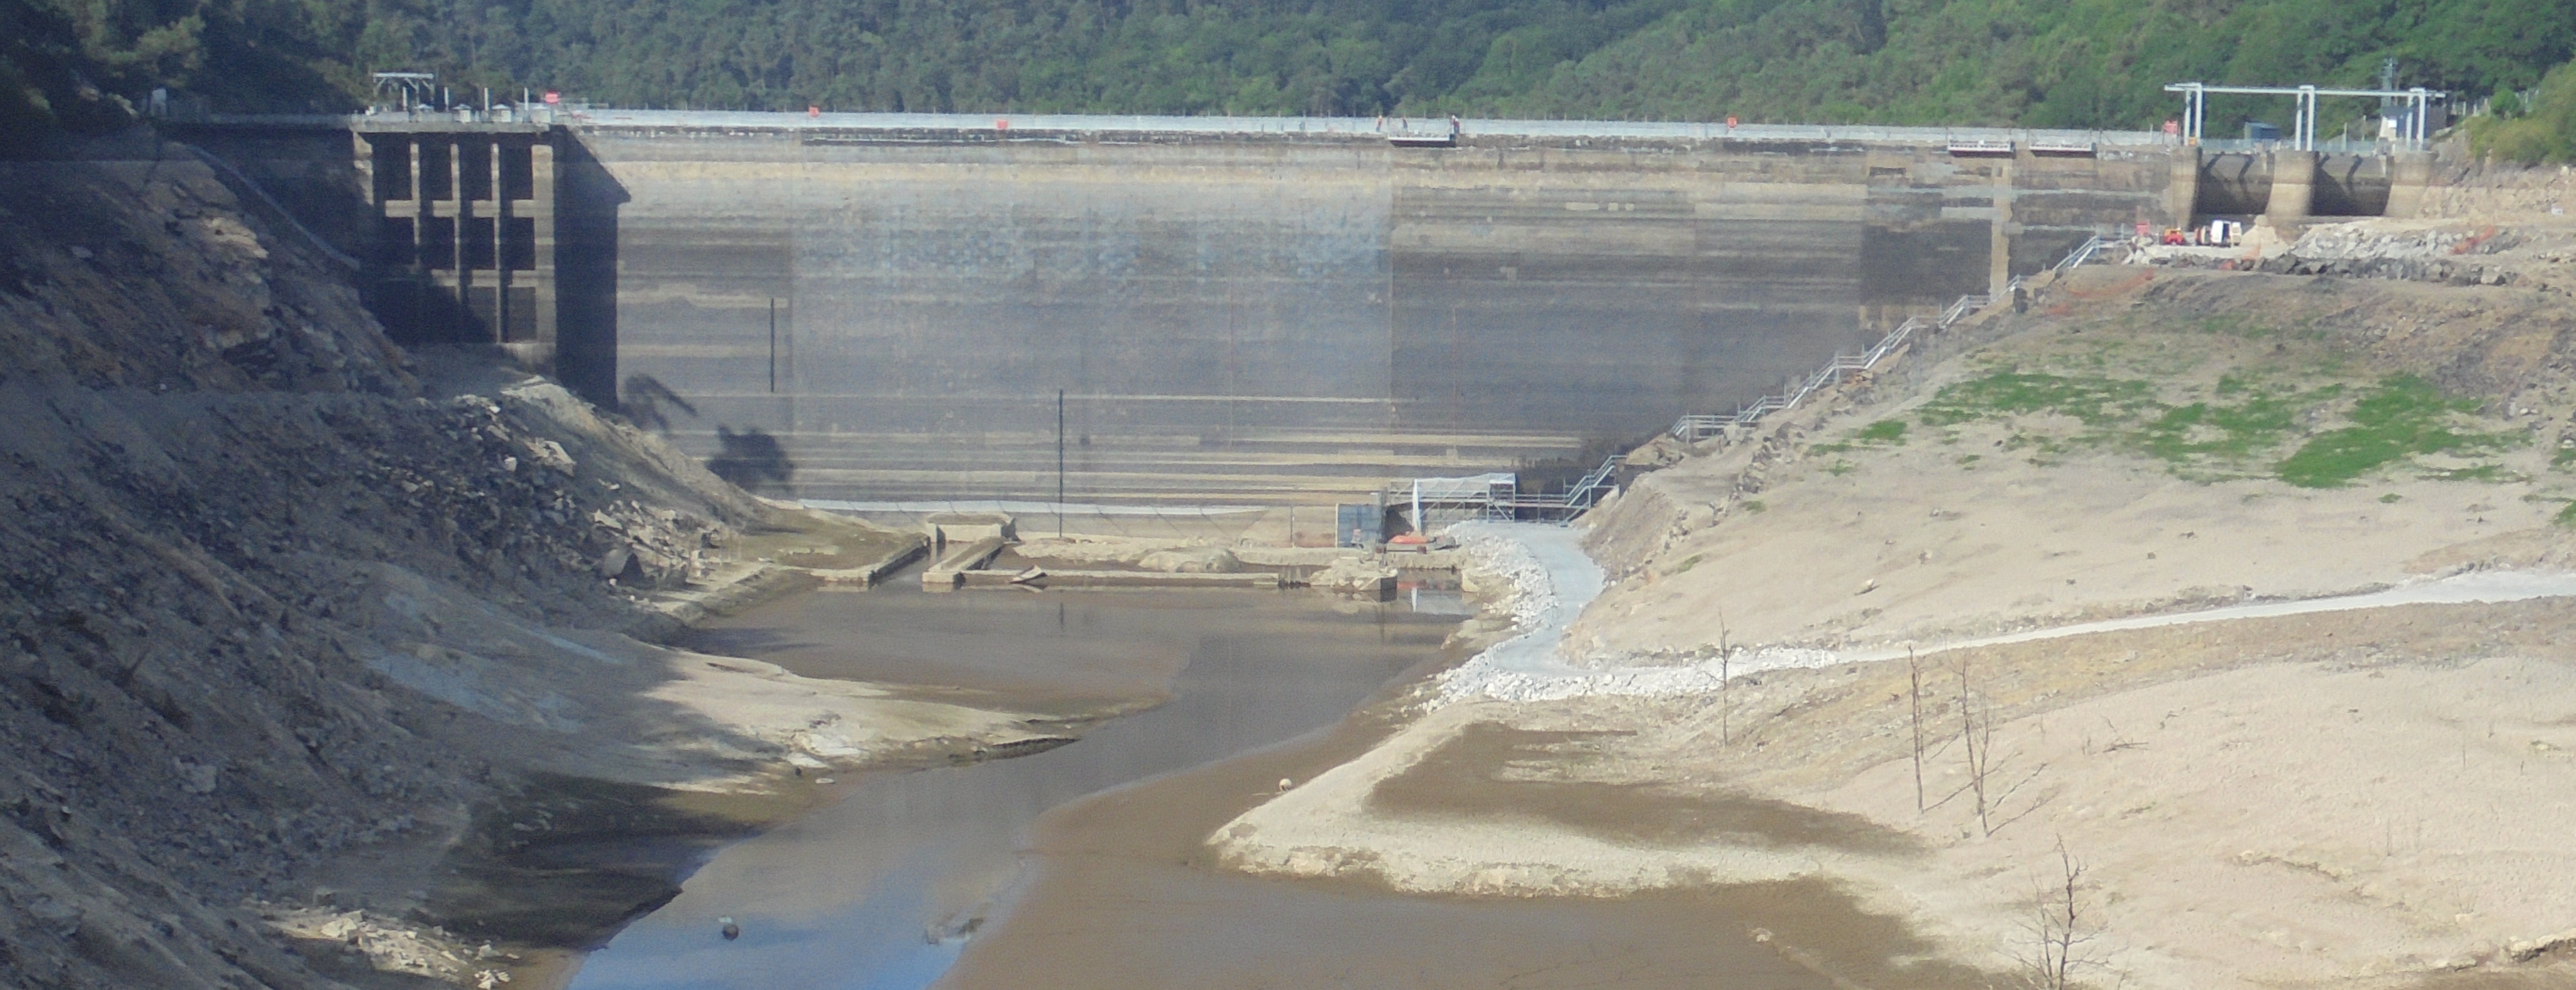 Guerlédan, 1er barrage construit en béton en France